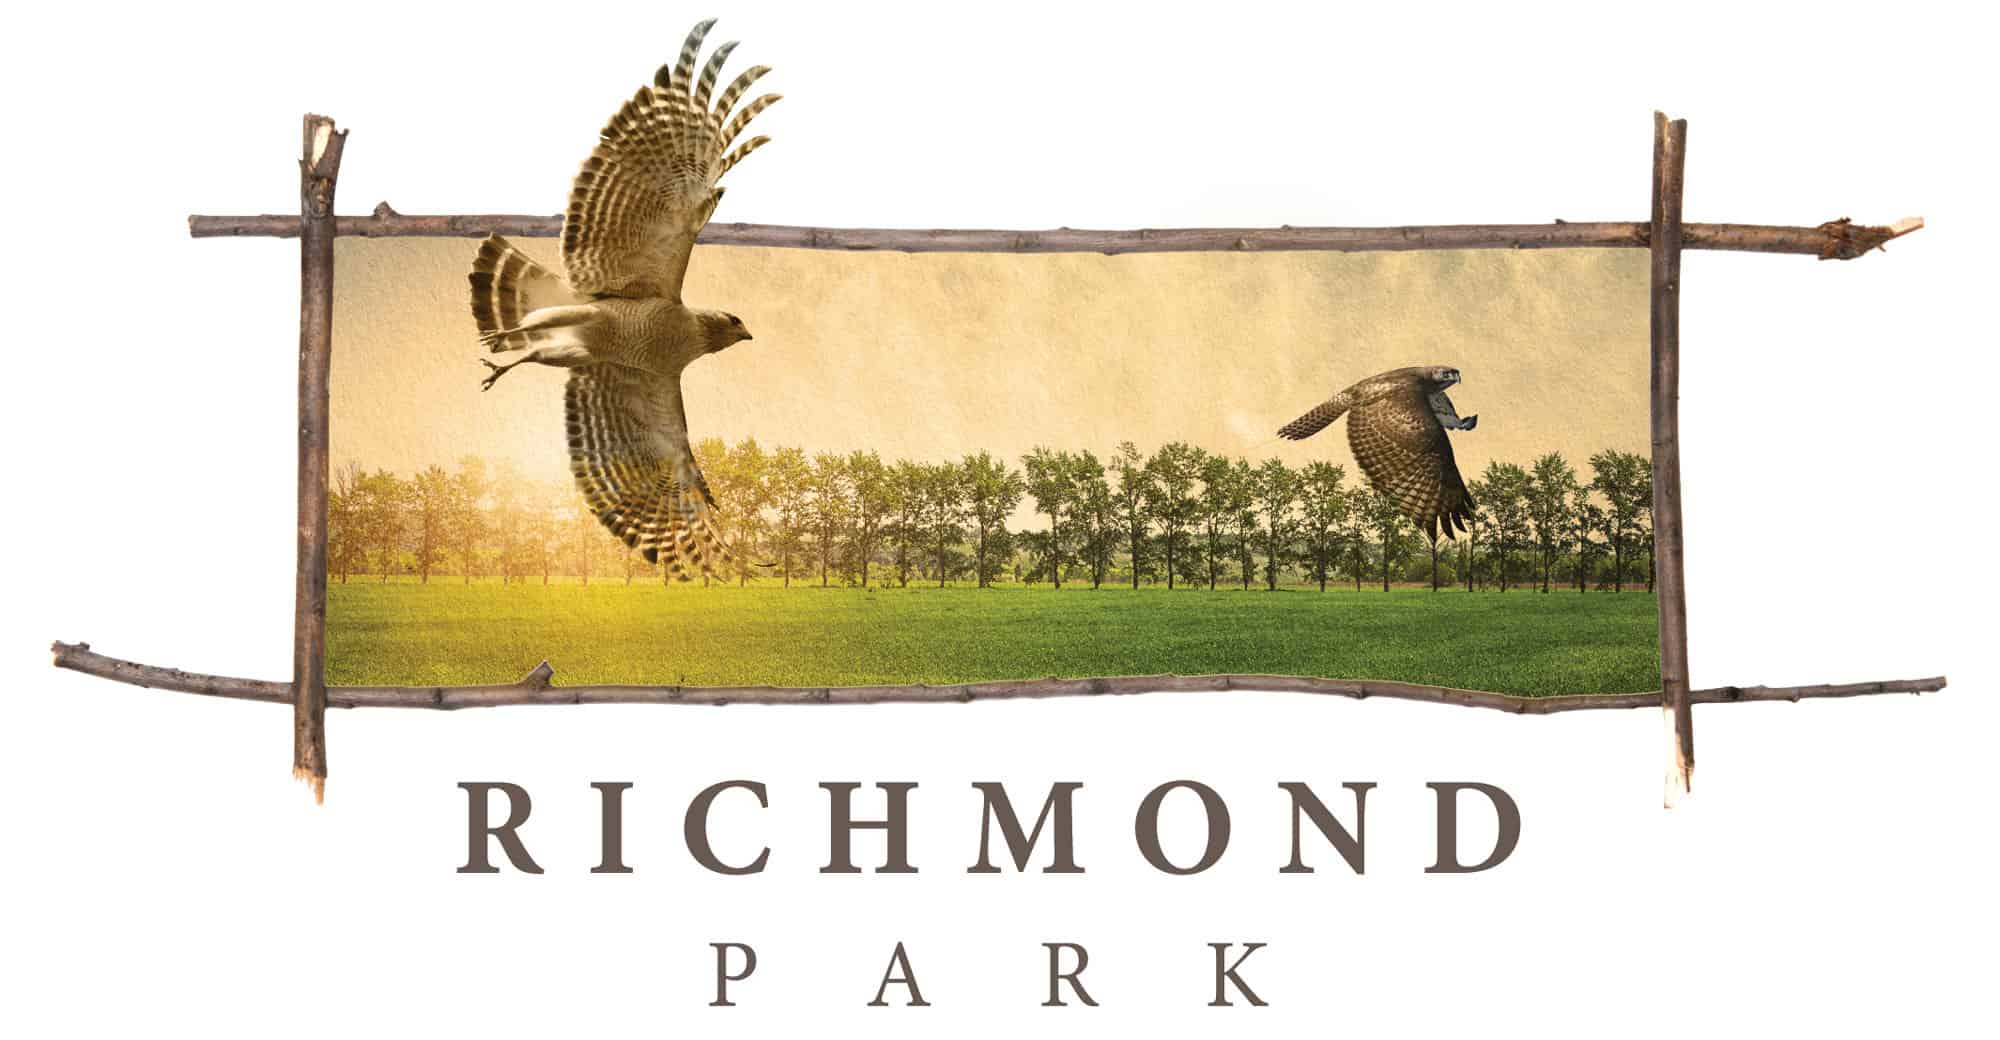 richmond park render